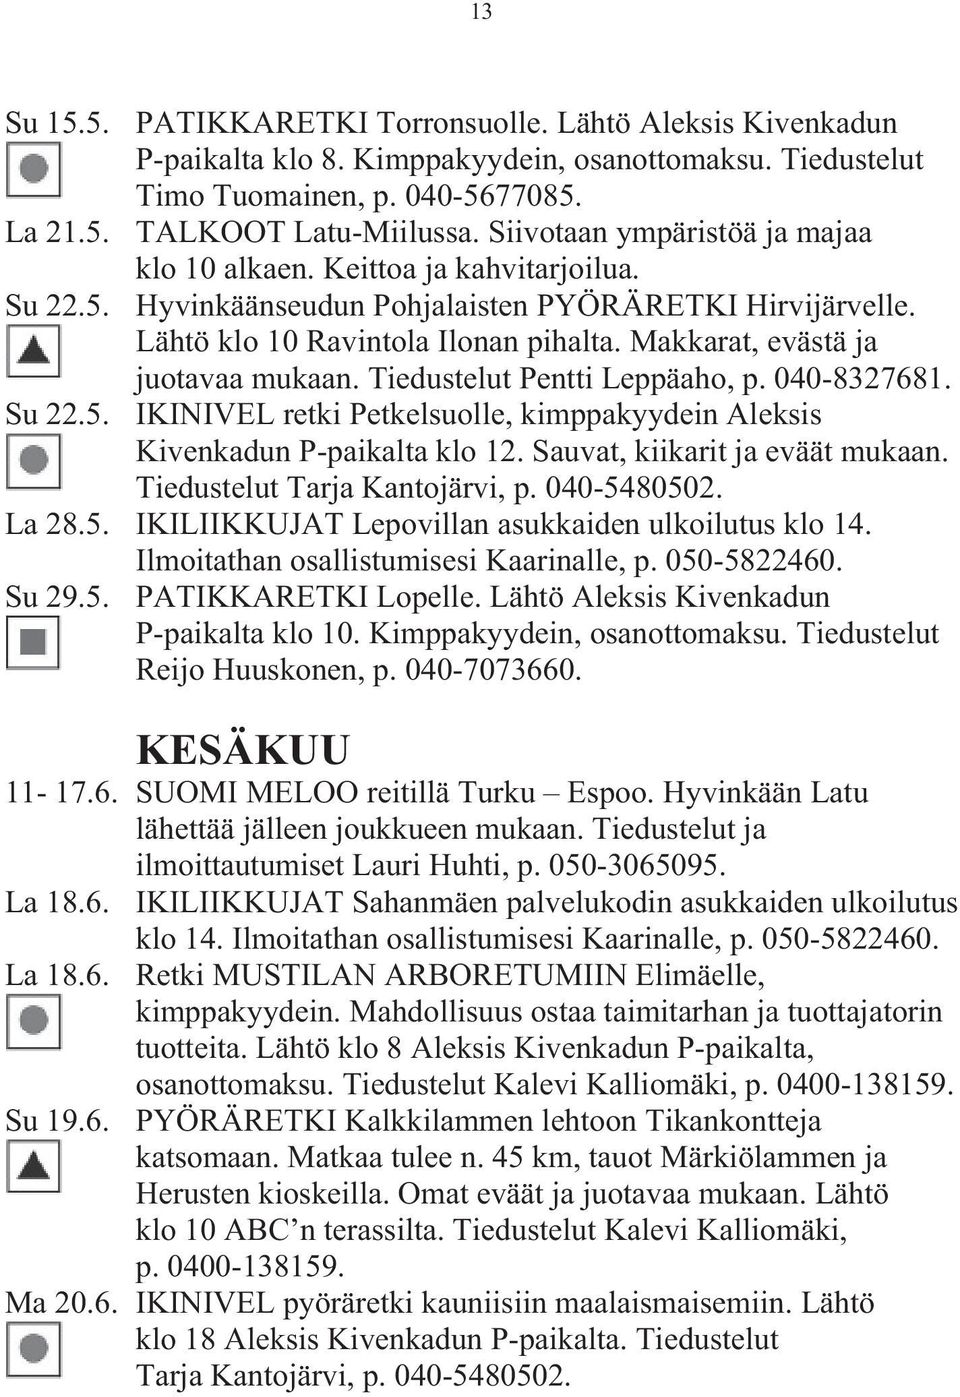 Makkarat, evästä ja juotavaa mukaan. Tiedustelut Pentti Leppäaho, p. 040-8327681. Su 22.5. IKINIVEL retki Petkelsuolle, kimppakyydein Aleksis Kivenkadun P-paikalta klo 12.